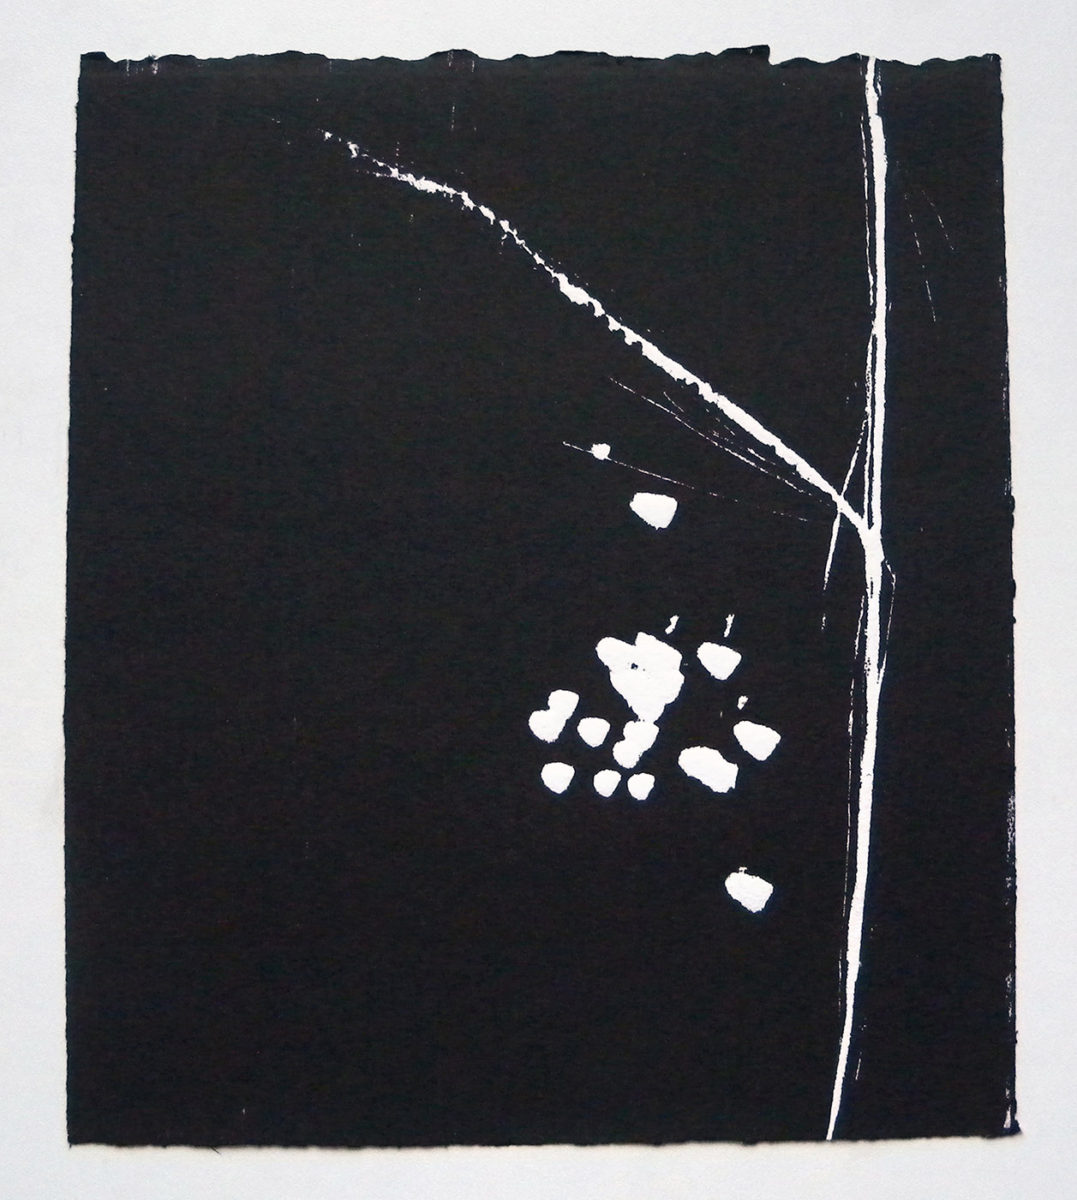 MARC FELD 2012 SONG FOR STEVE LACY 1' Gravure sur bois encre sur papier 25 x 26 cm (Tirage Patrick Vernet)